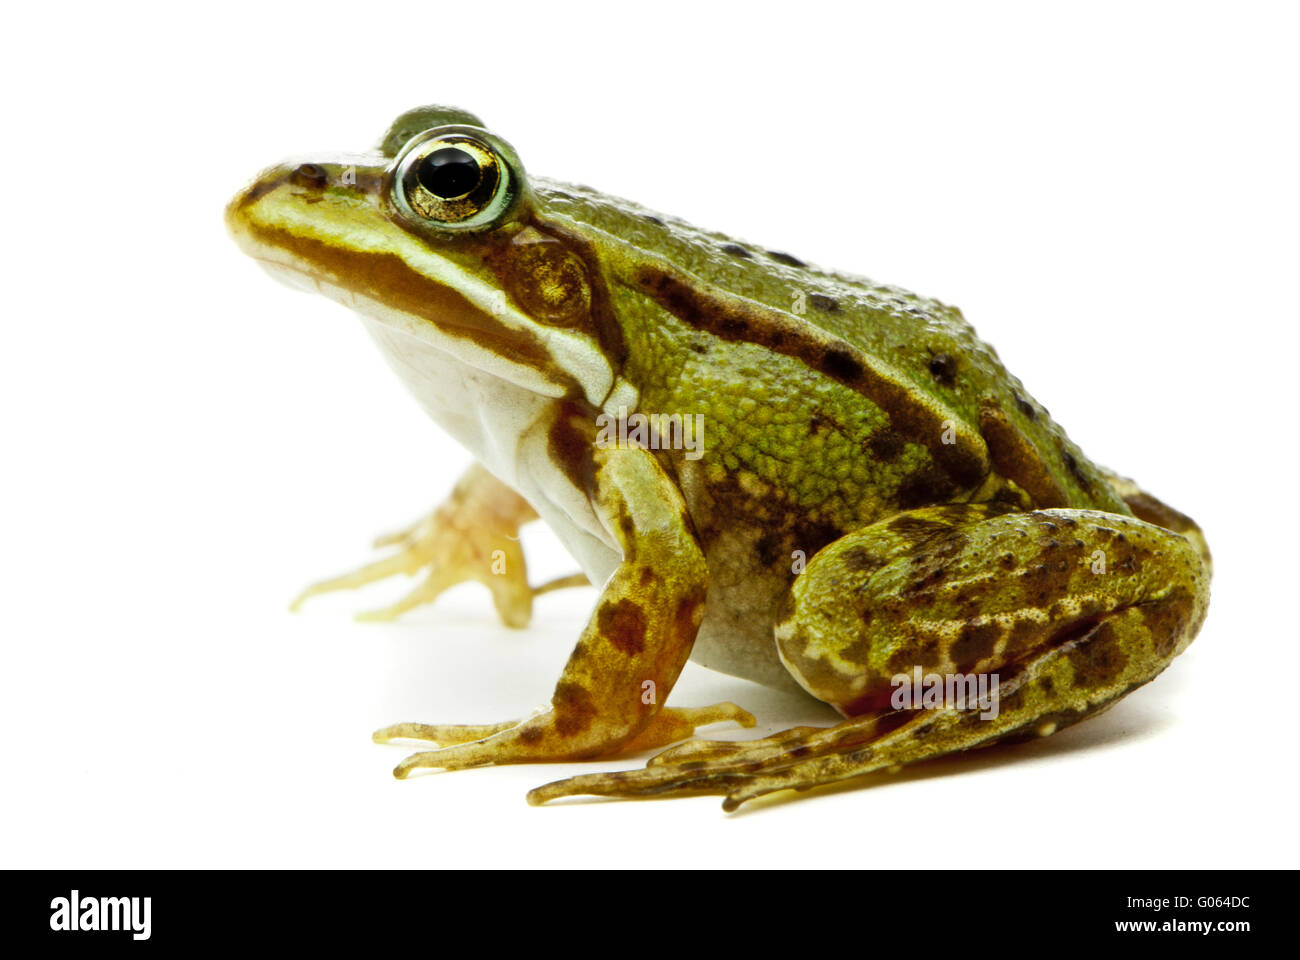 Rana Esculenta. Grün (Europäische oder Wasser) Frosch auf weißem Hintergrund. Stockfoto